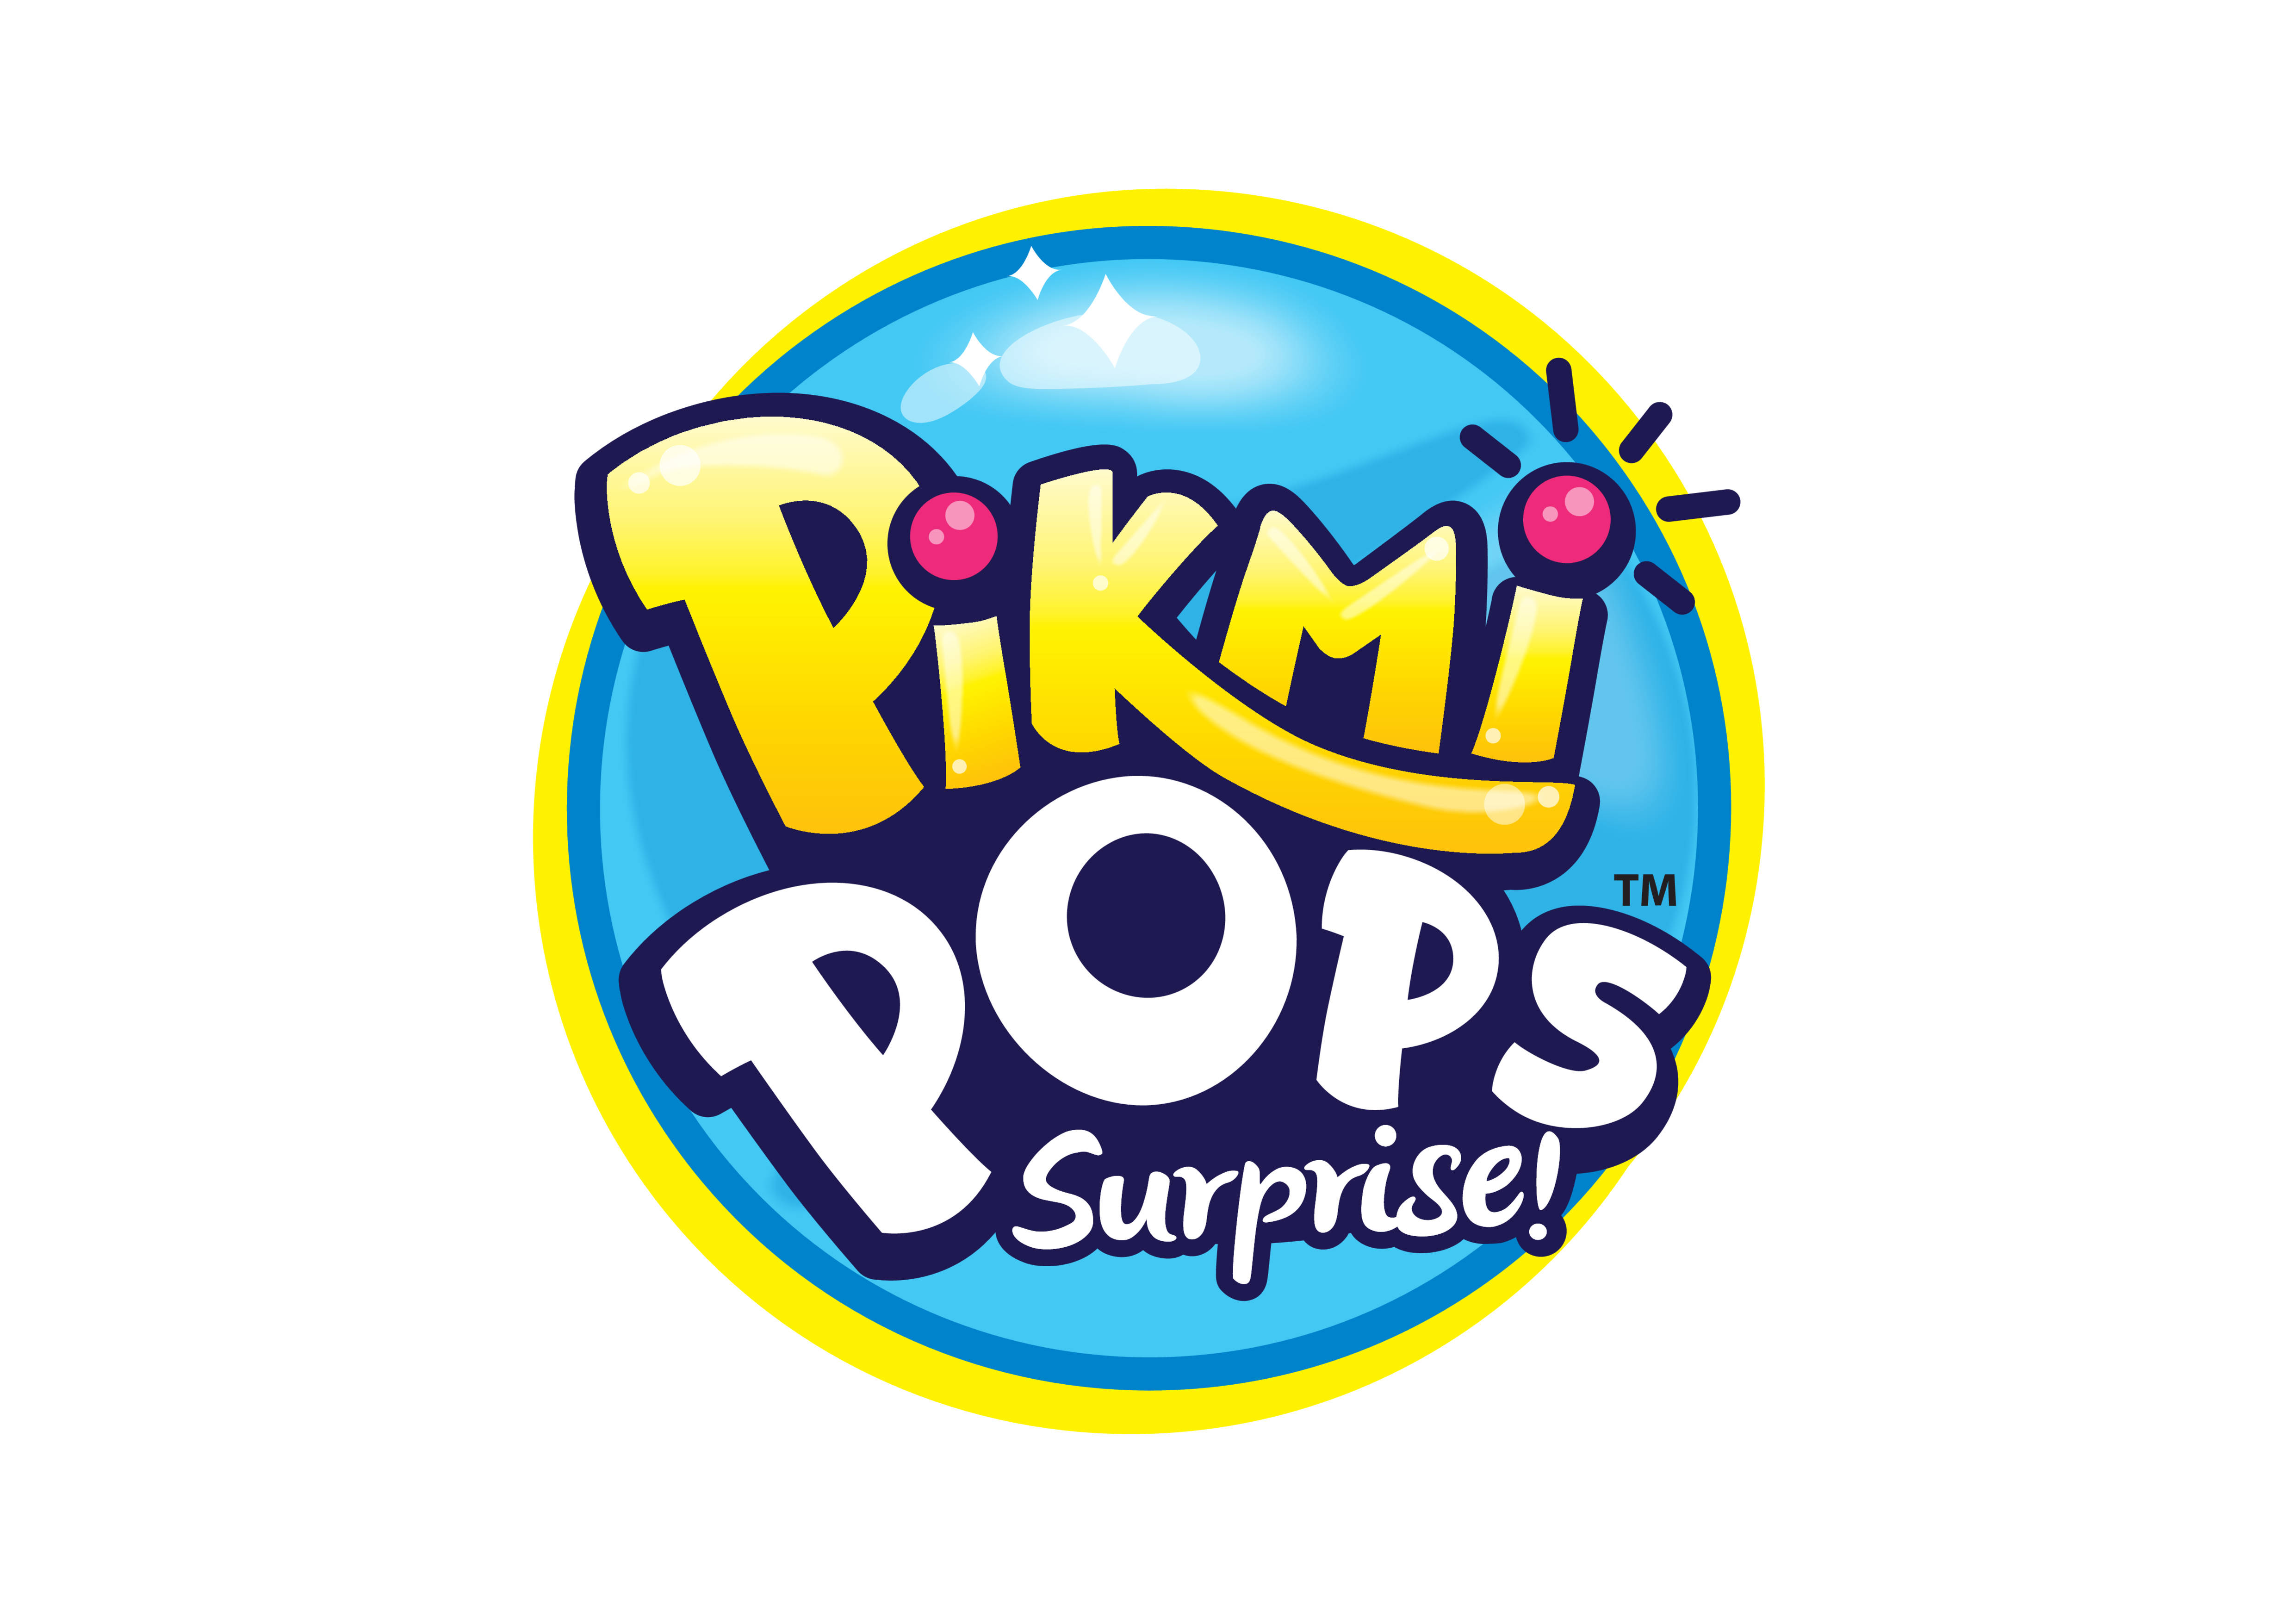 Pikmi Pops Surprise